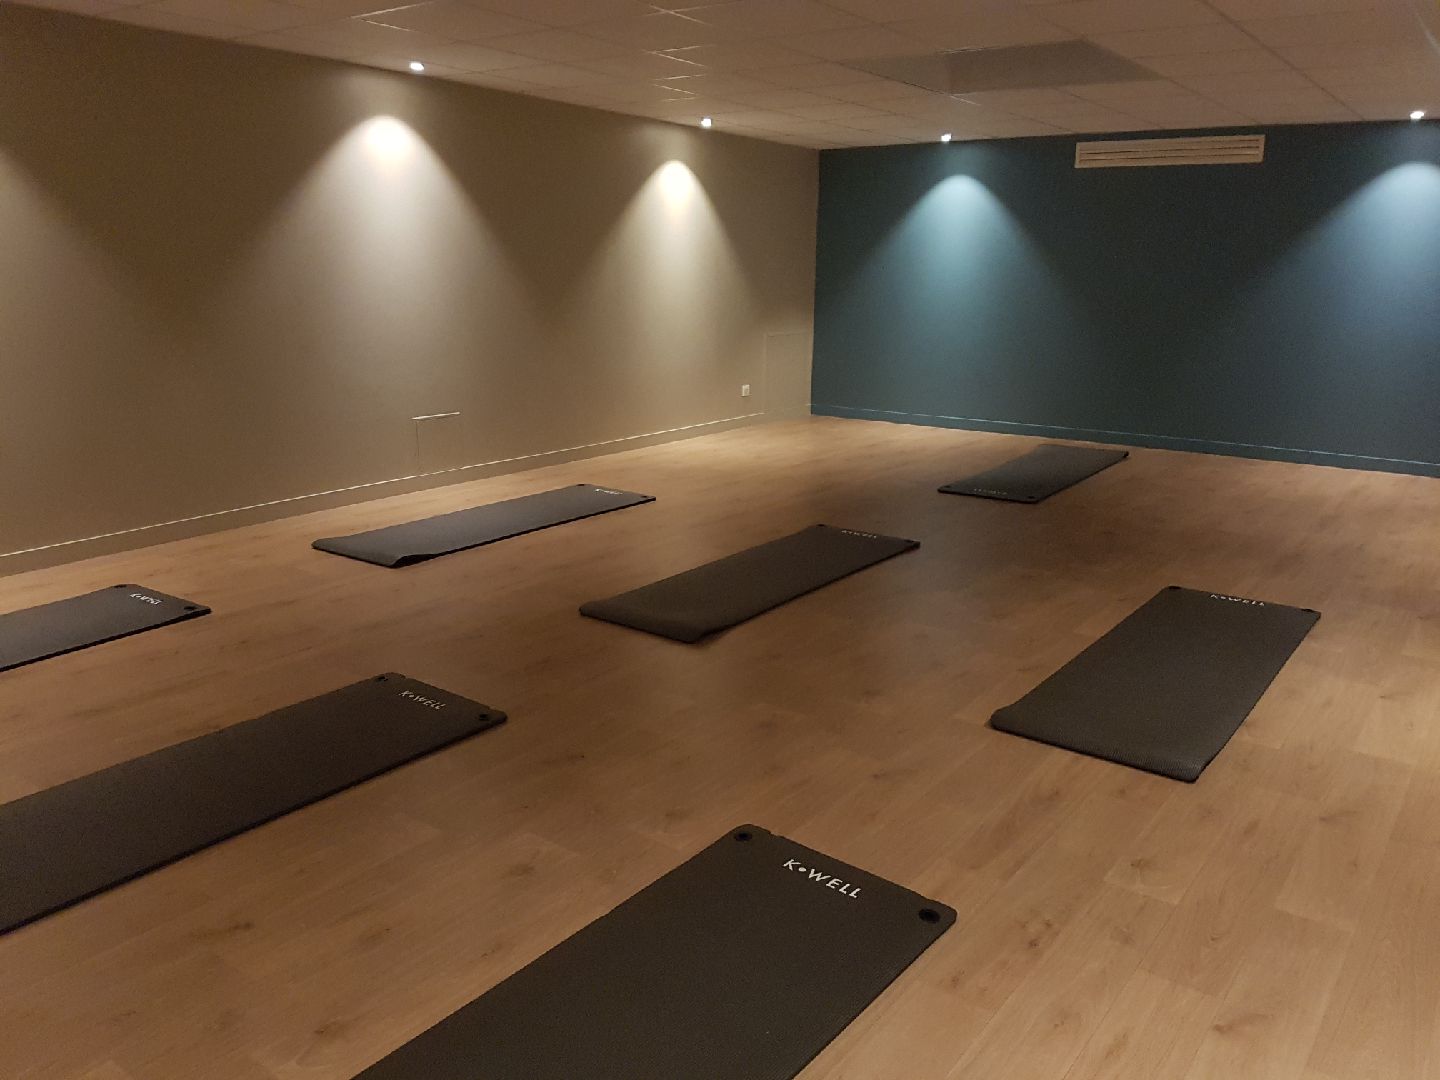 Sport en salle, yoga, qi ball, pilates - Bien-être et travail musculaire profond